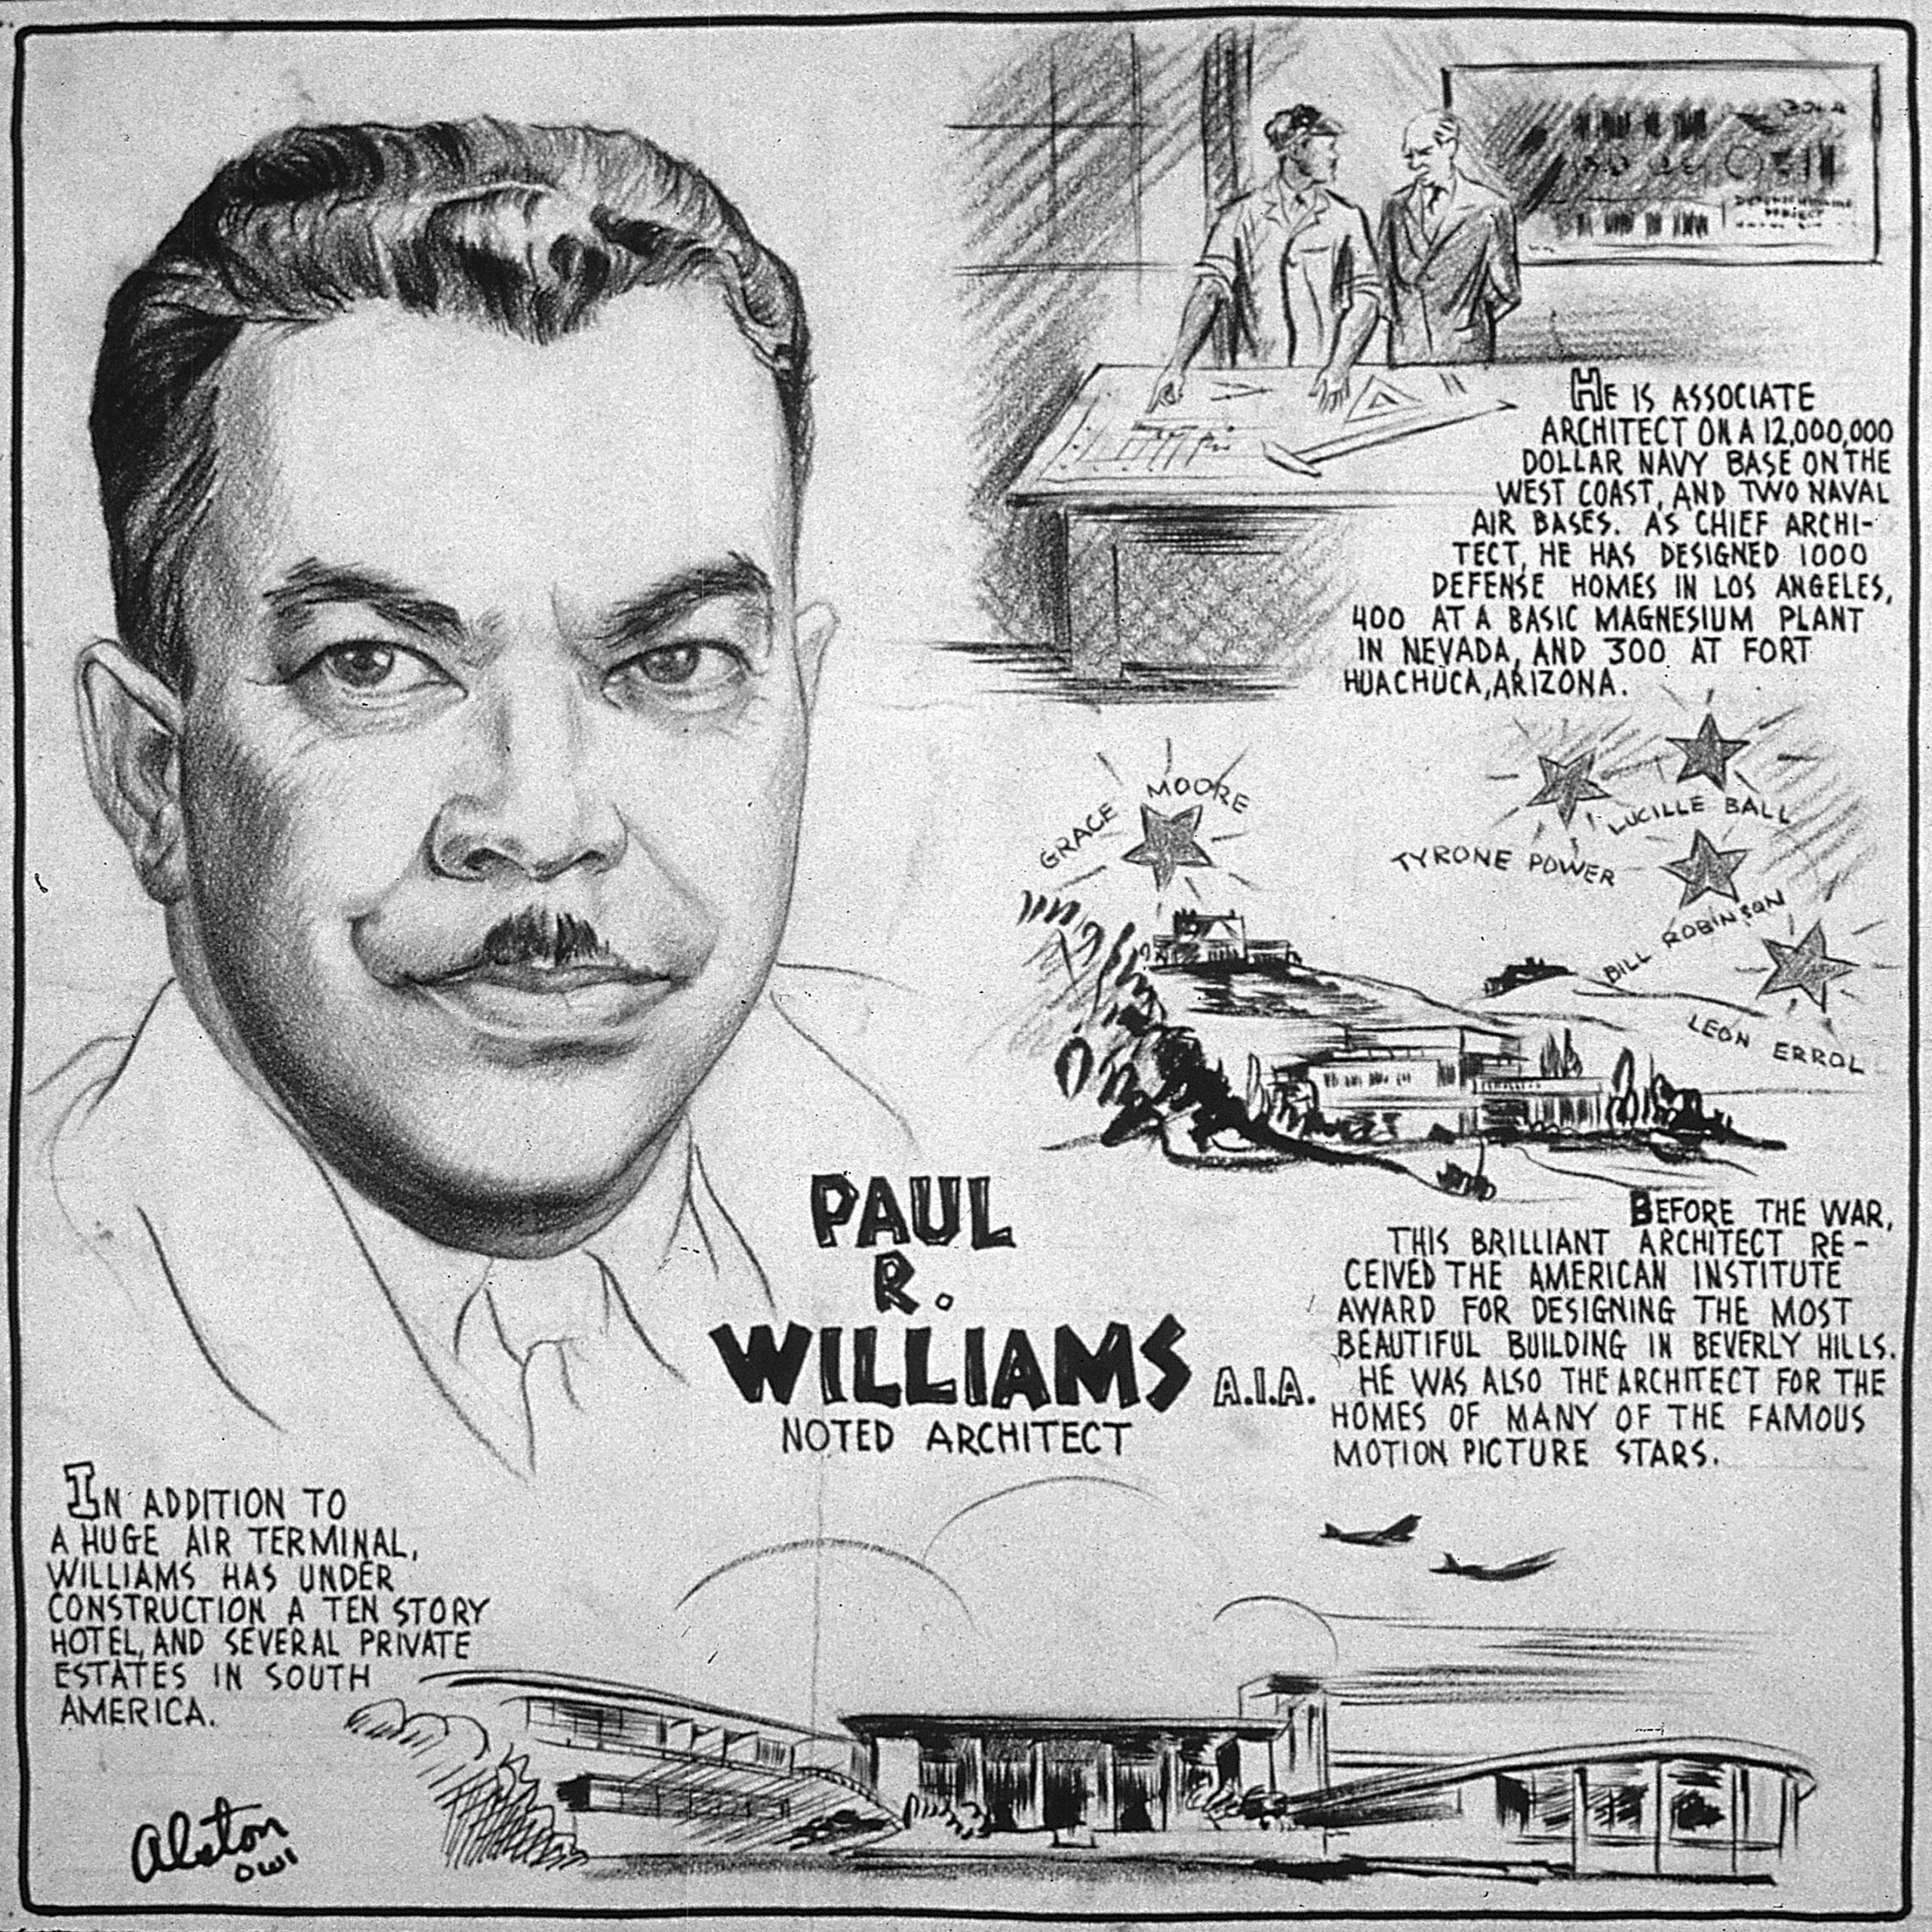 Ilustração de Charles Alston, de 1943. Além de ilustrar Paul Revere Williams, conta um pouco de sua carreira e seus feitos 